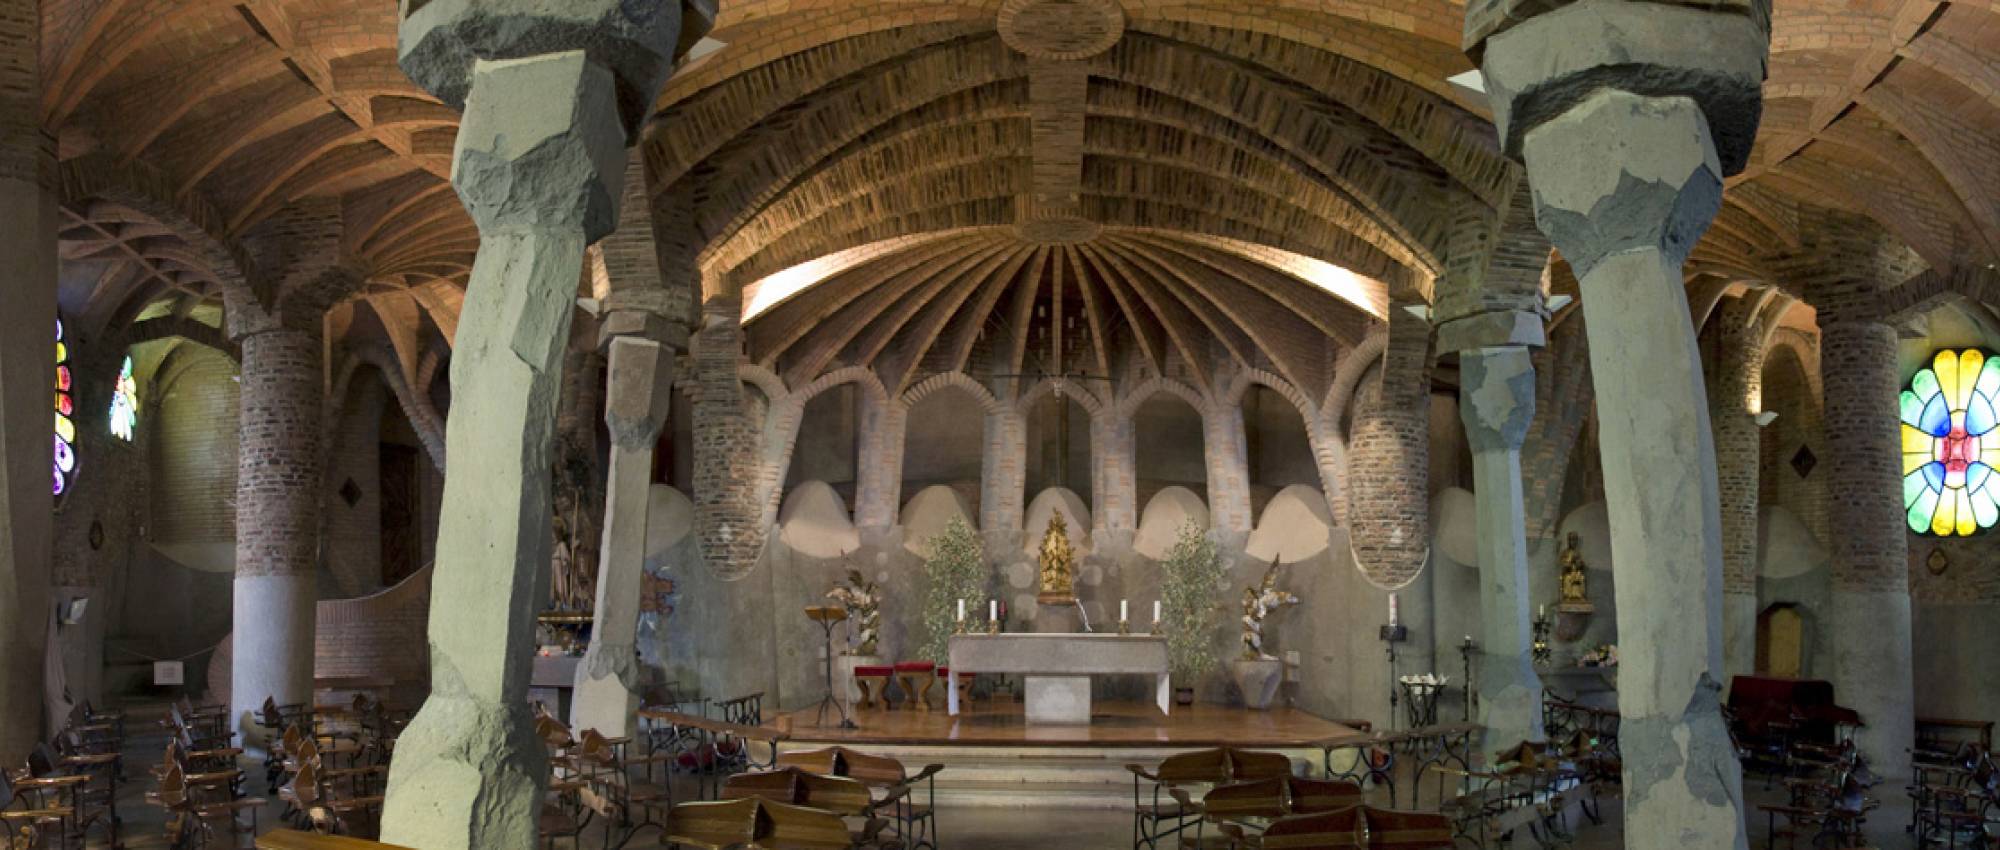 Cripta de la Colonia Güell, de Antonio Gaudí. jorapa / Flickr. CC BY-SA 2.0